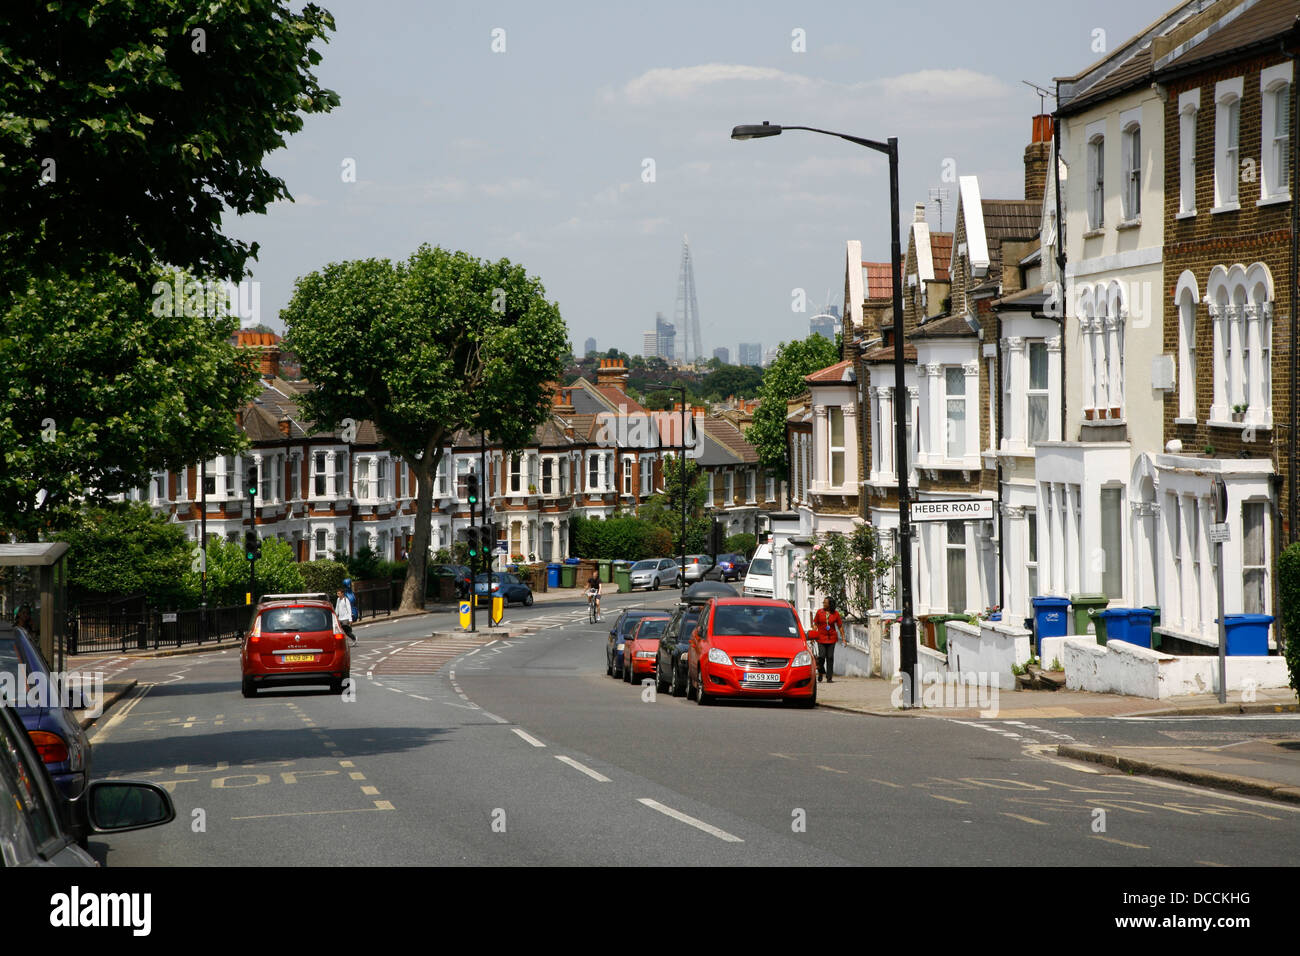 Ver abajo Lordship Lane, East Dulwich, hacia el Shard en la distancia, Londres, Reino Unido. Foto de stock